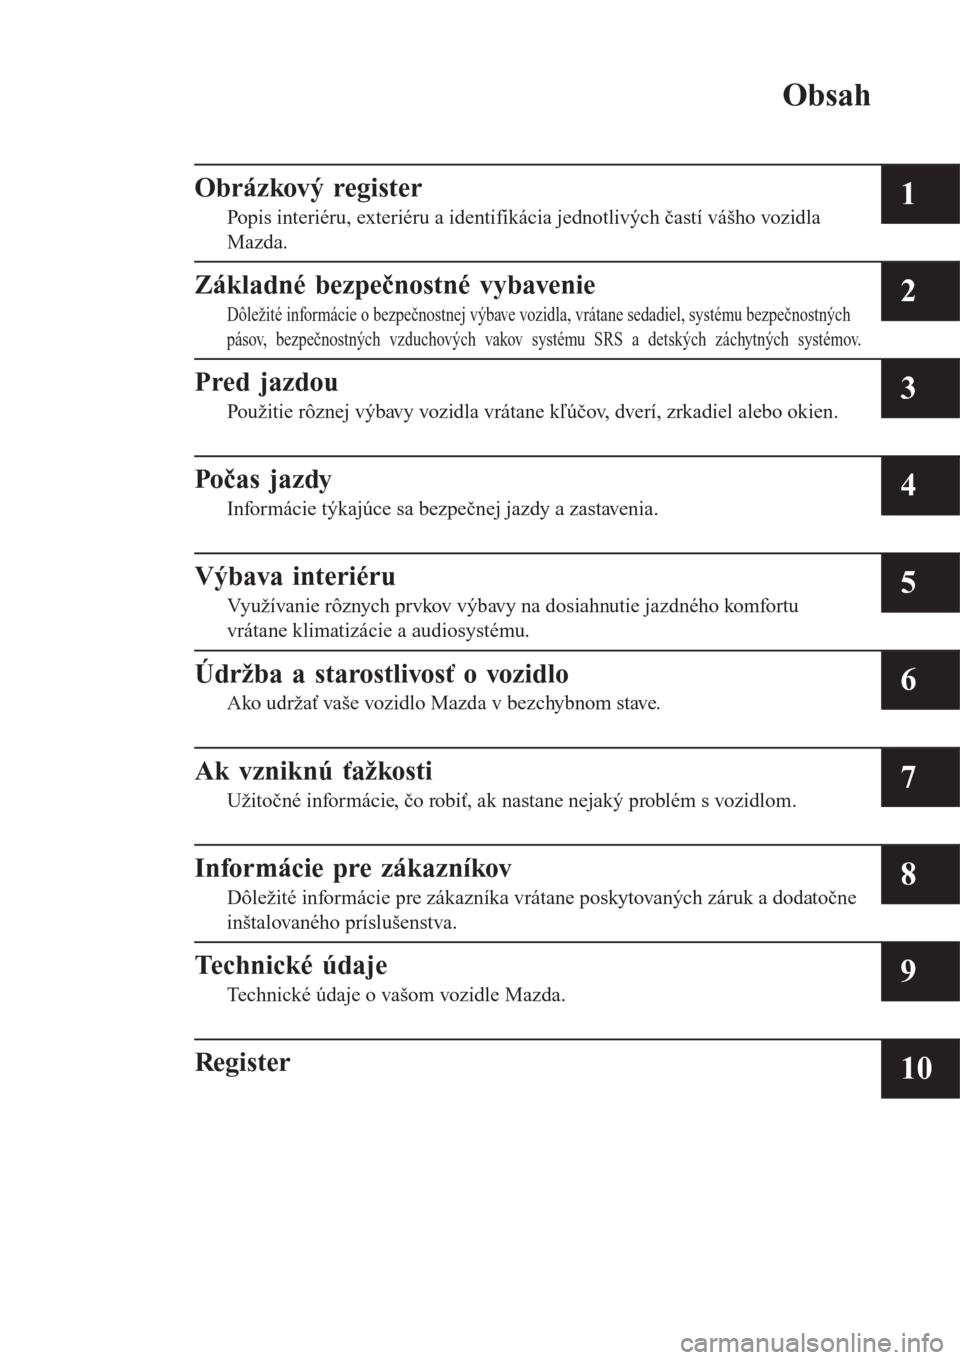 MAZDA MODEL CX-3 2015  Užívateľská príručka (in Slovak) Obsah
Obrázkový register
Popis interiéru, exteriéru a identifikácia jednotlivých častí vášho vozidla
Mazda.1
Základné bezpečnostné vybavenie
Dôležité informácie o bezpečnostnej výb